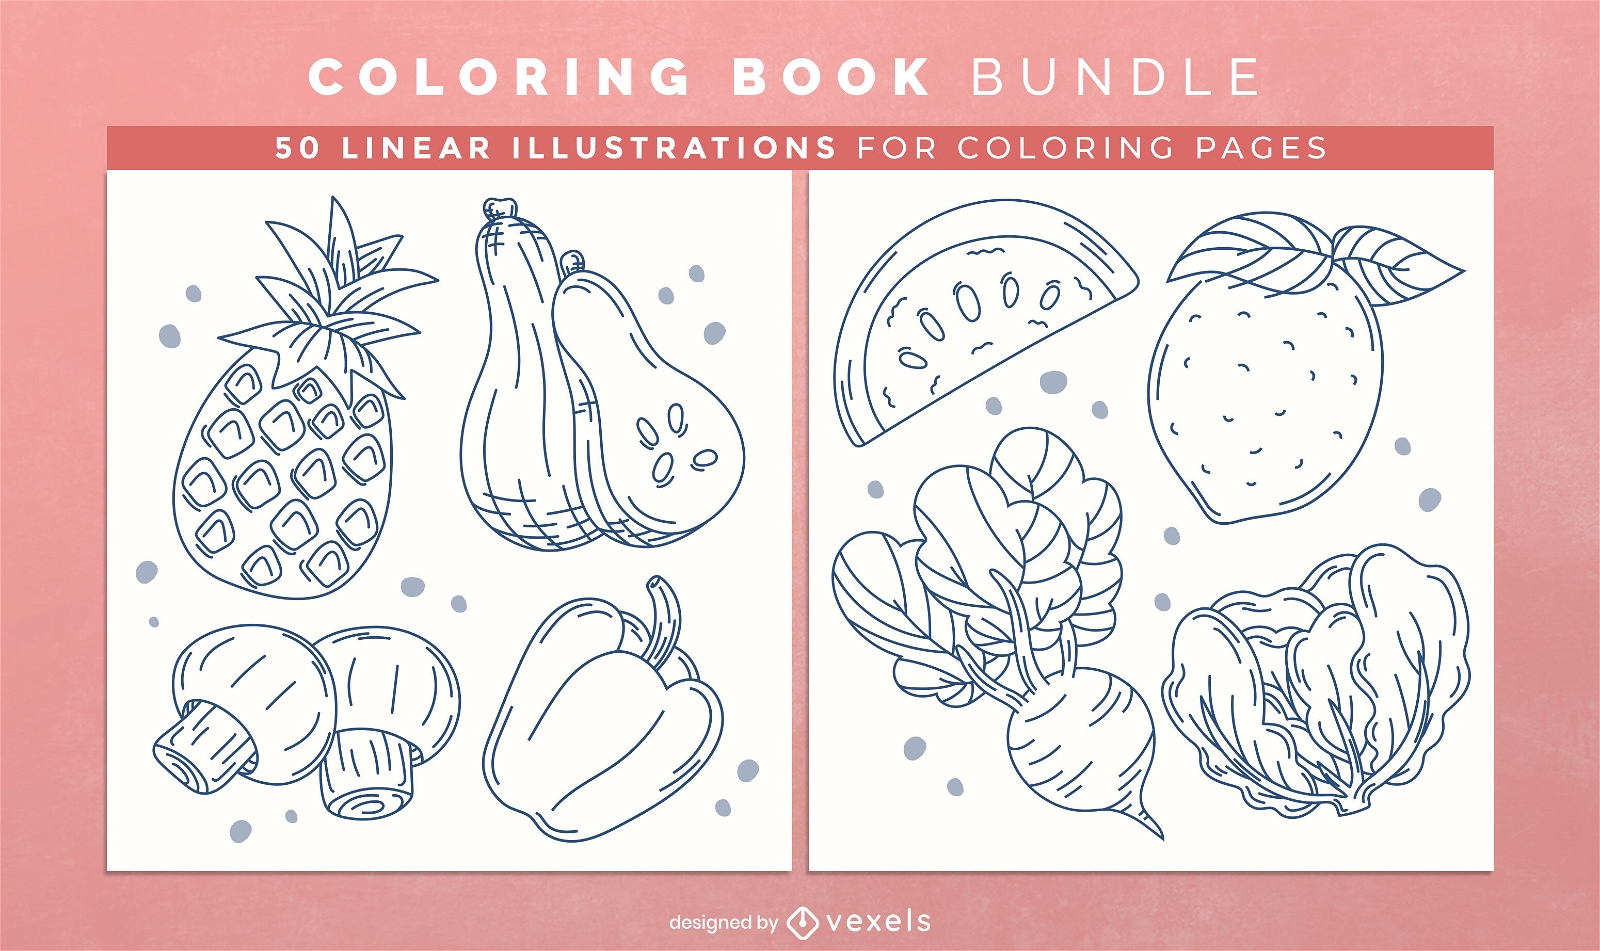 Livro para Colorir de Frutas e Legumes para Adultos (Paperback